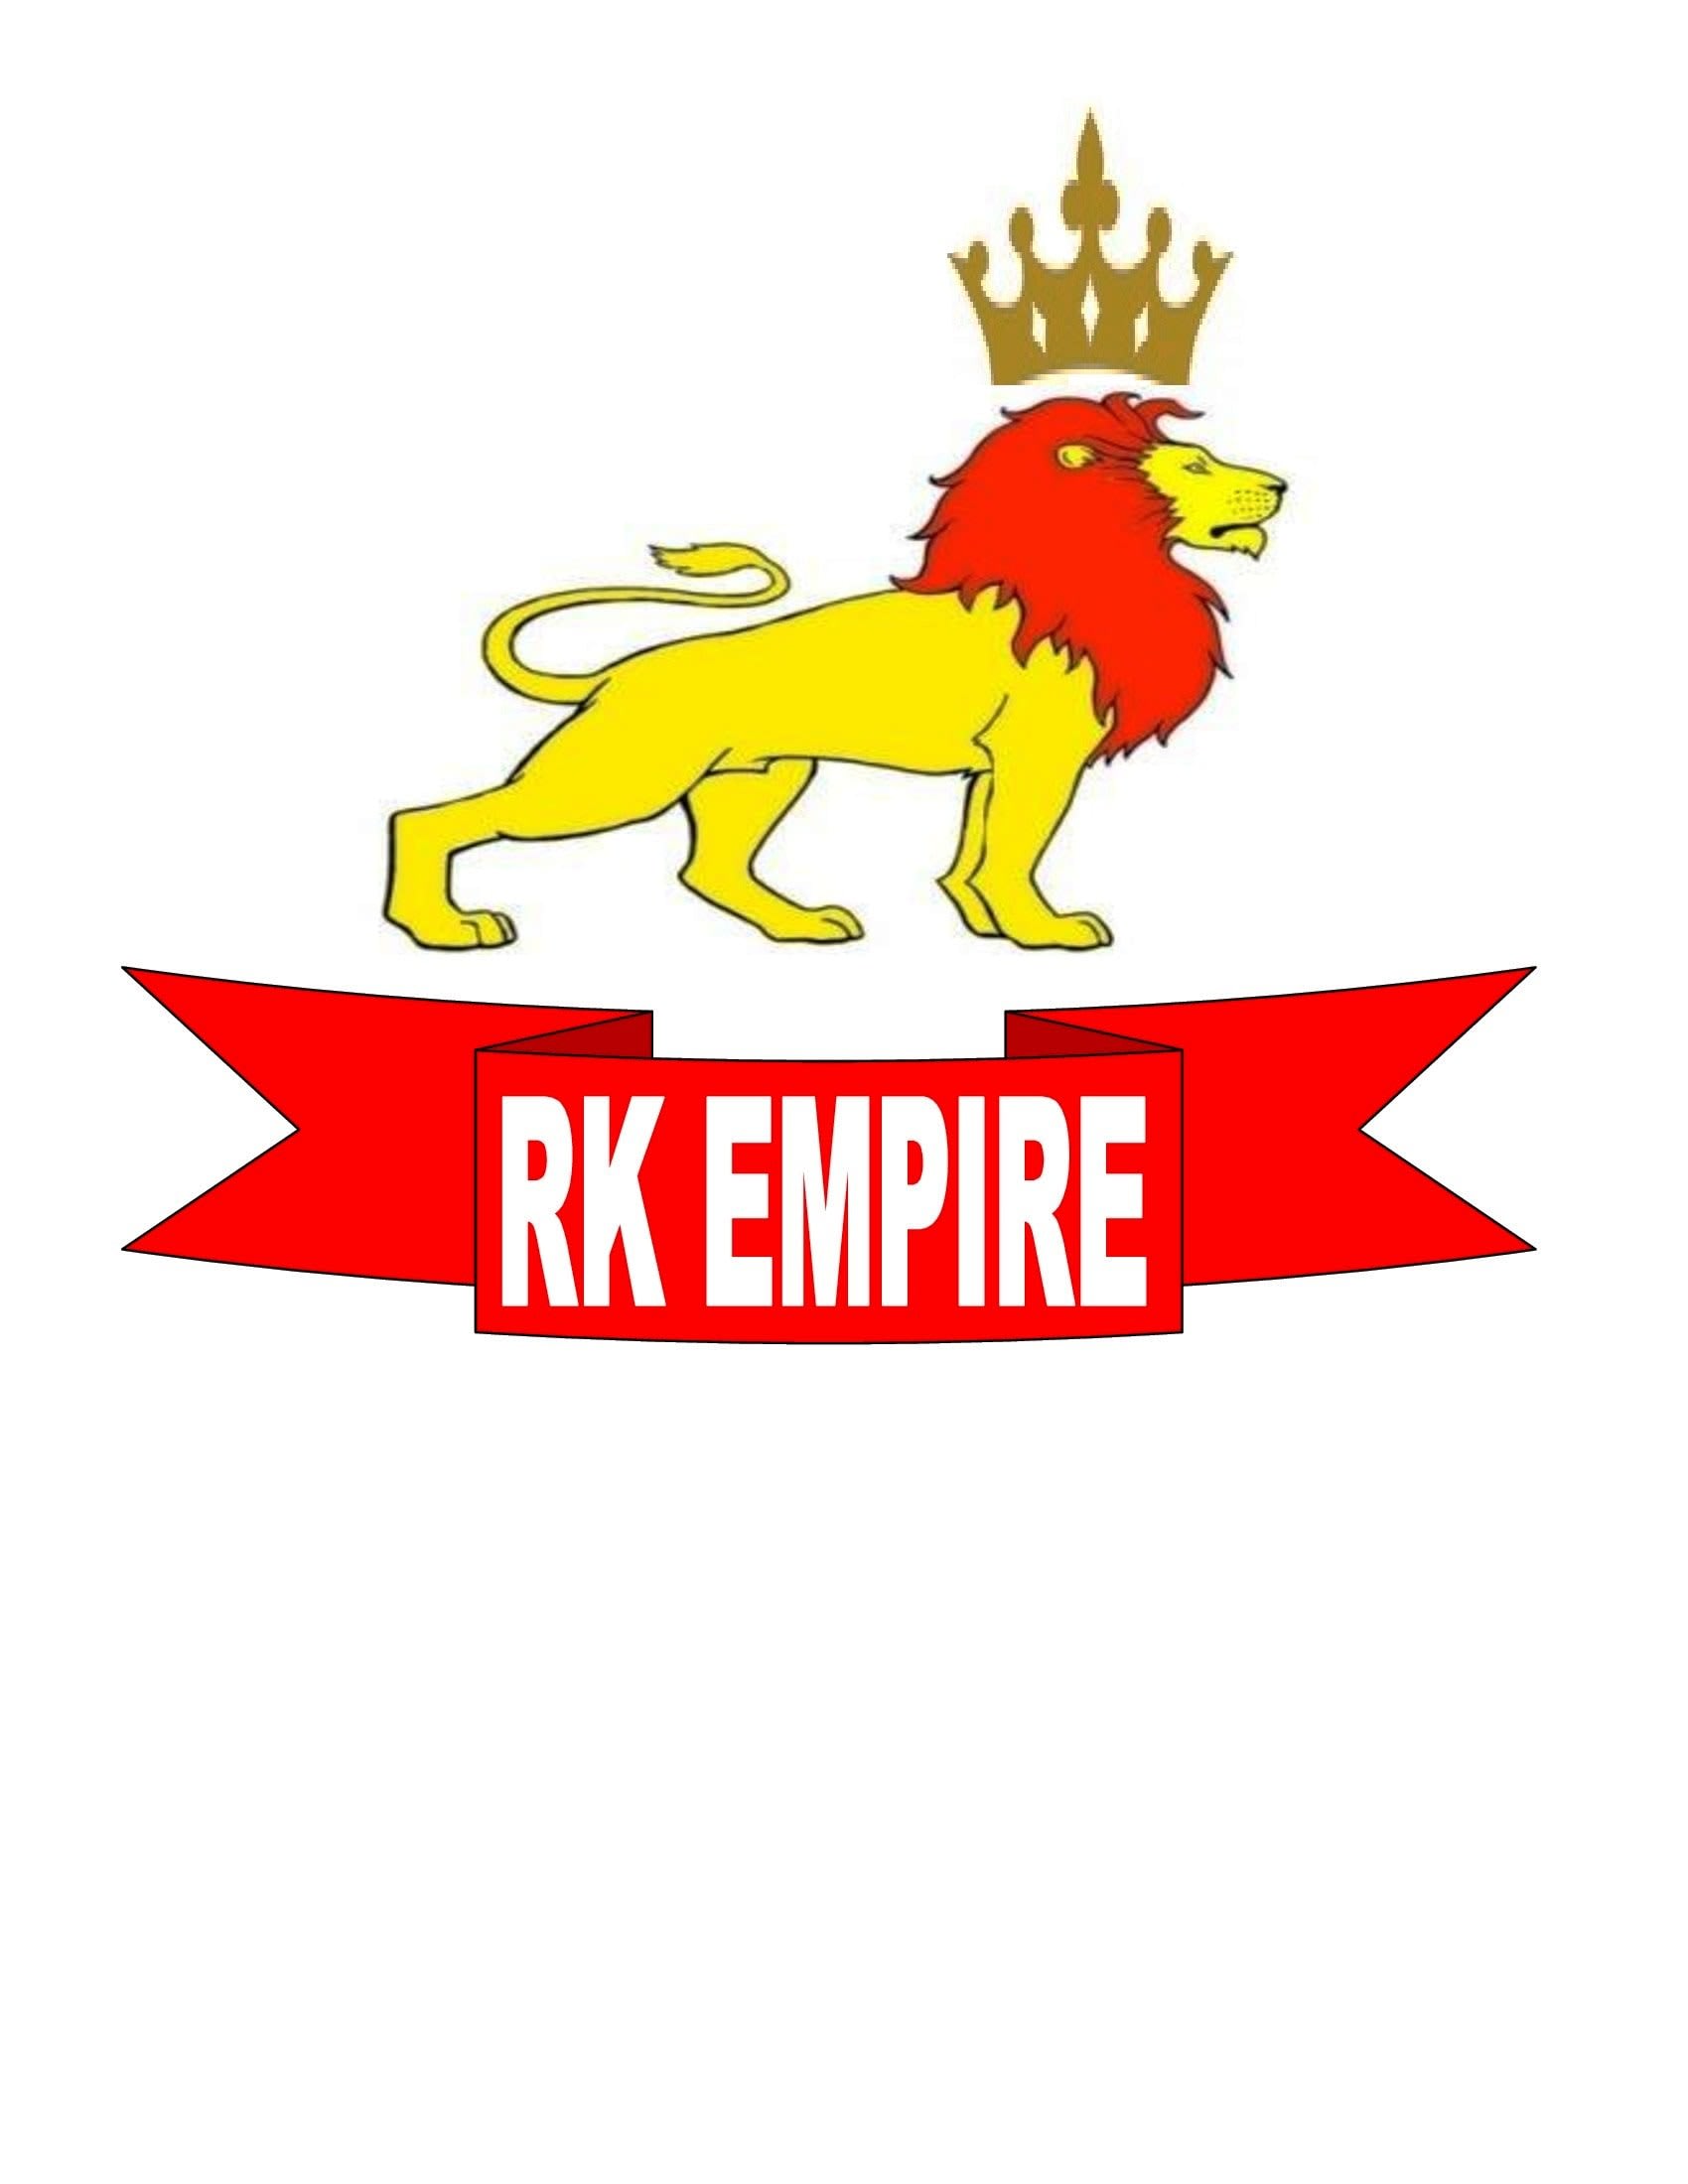 RK EMPIRE